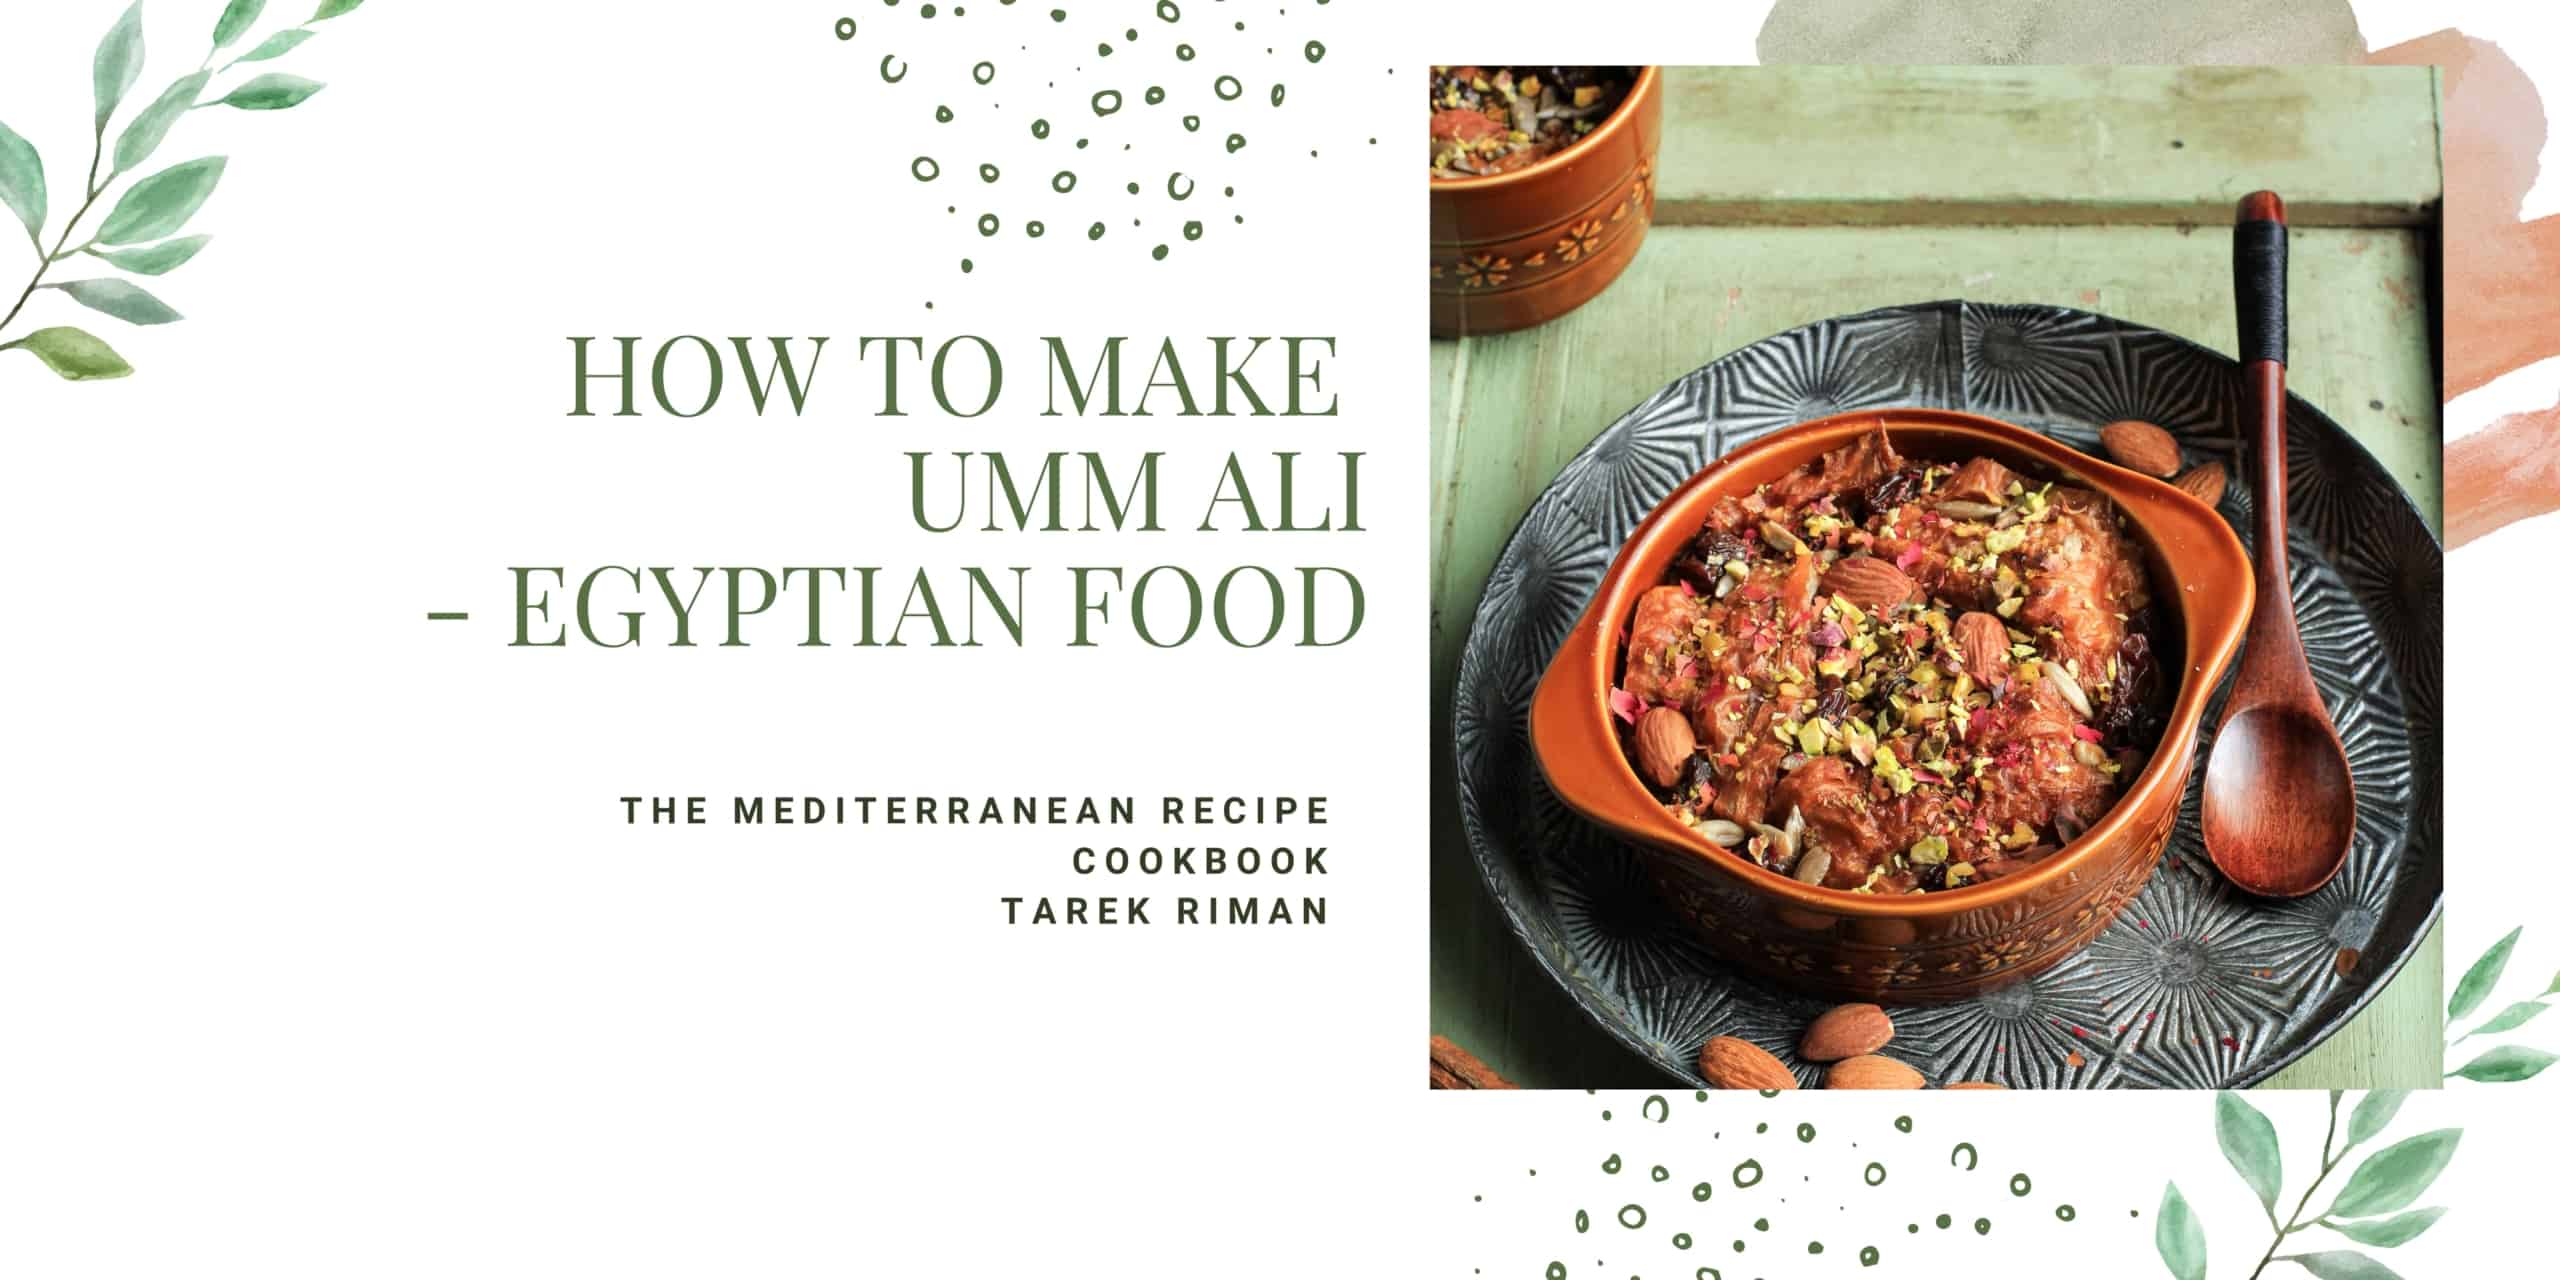 How to make Umm Ali - Egyptian food